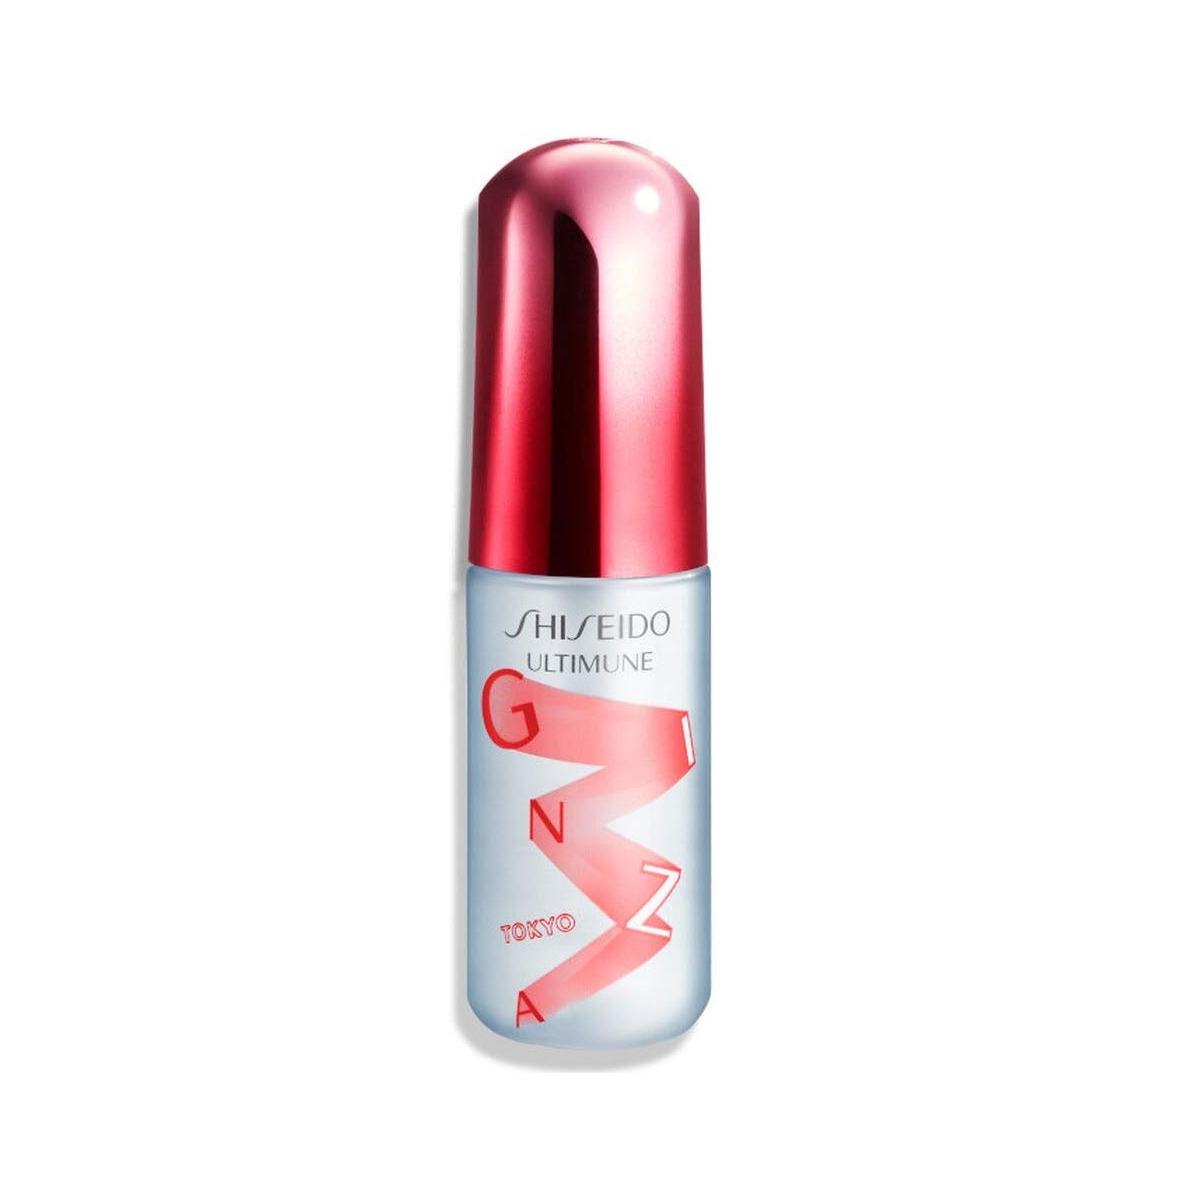 Shiseido Osvěžující a ochranná pleťová mlha Ultimune + náhradní náplň (Defence Refresh Mist) 2 x 30 ml